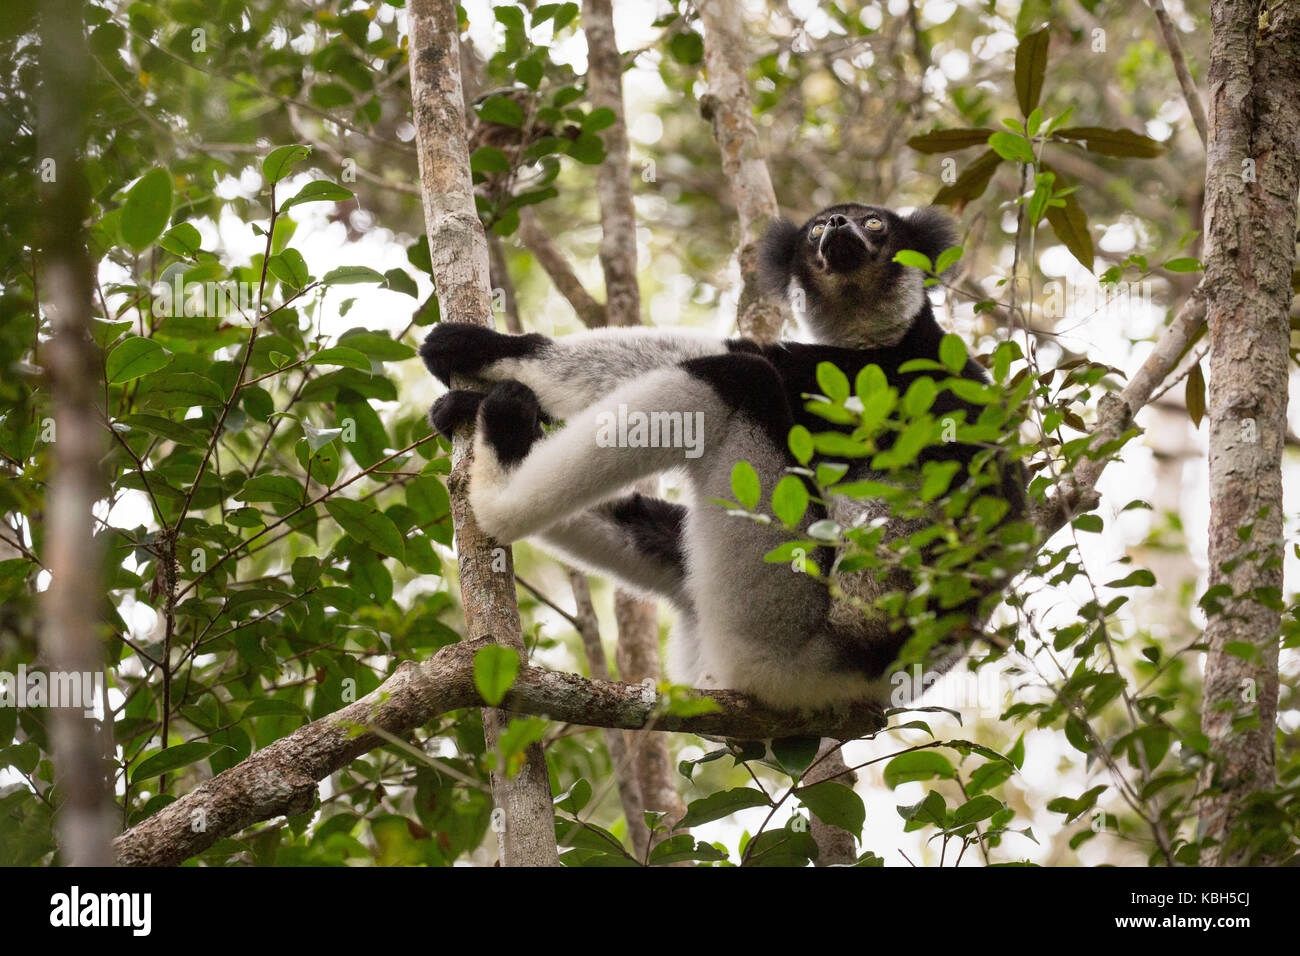 Africa, Madgascar, Andasibe Mantadia National Park, wild Indri (Indri indri), the world's largest lemur sitting in tree. Stock Photo